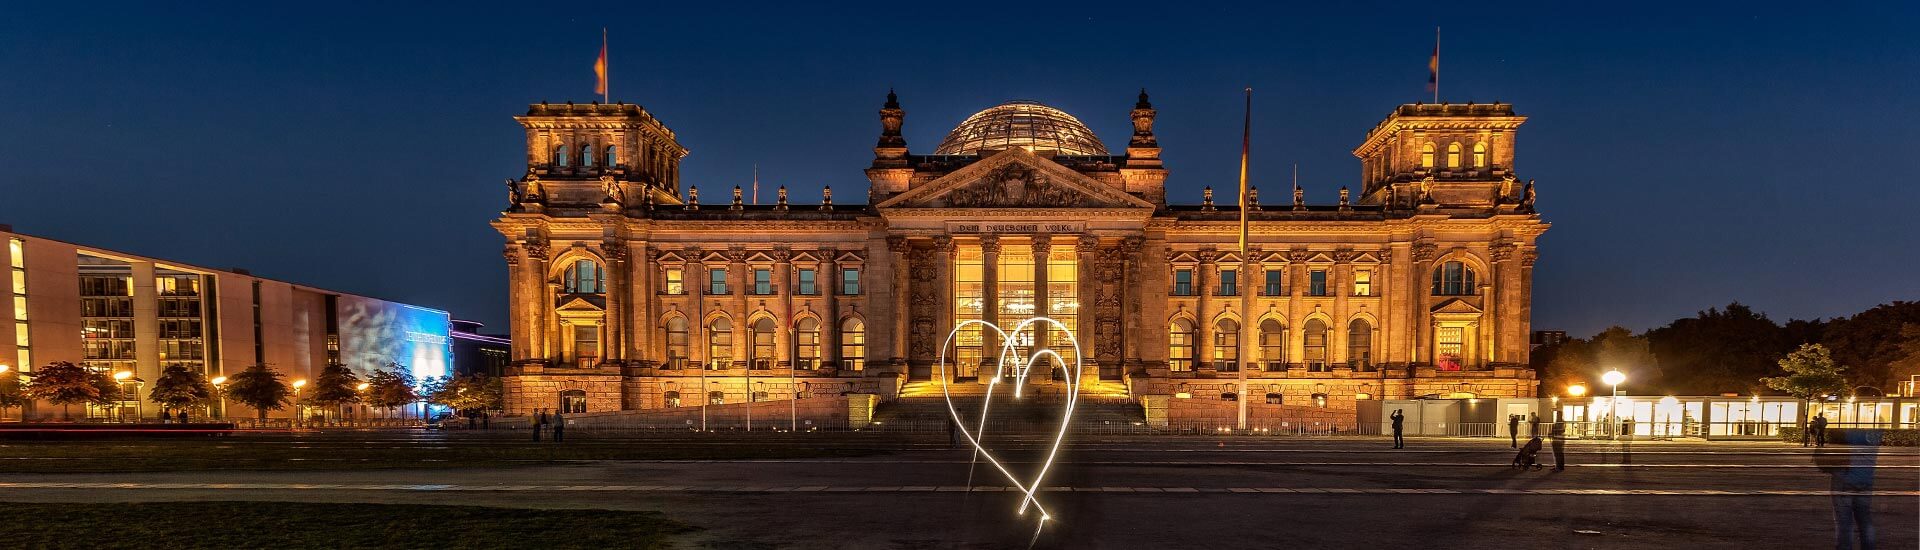 Reichstag Berlin bei Nacht